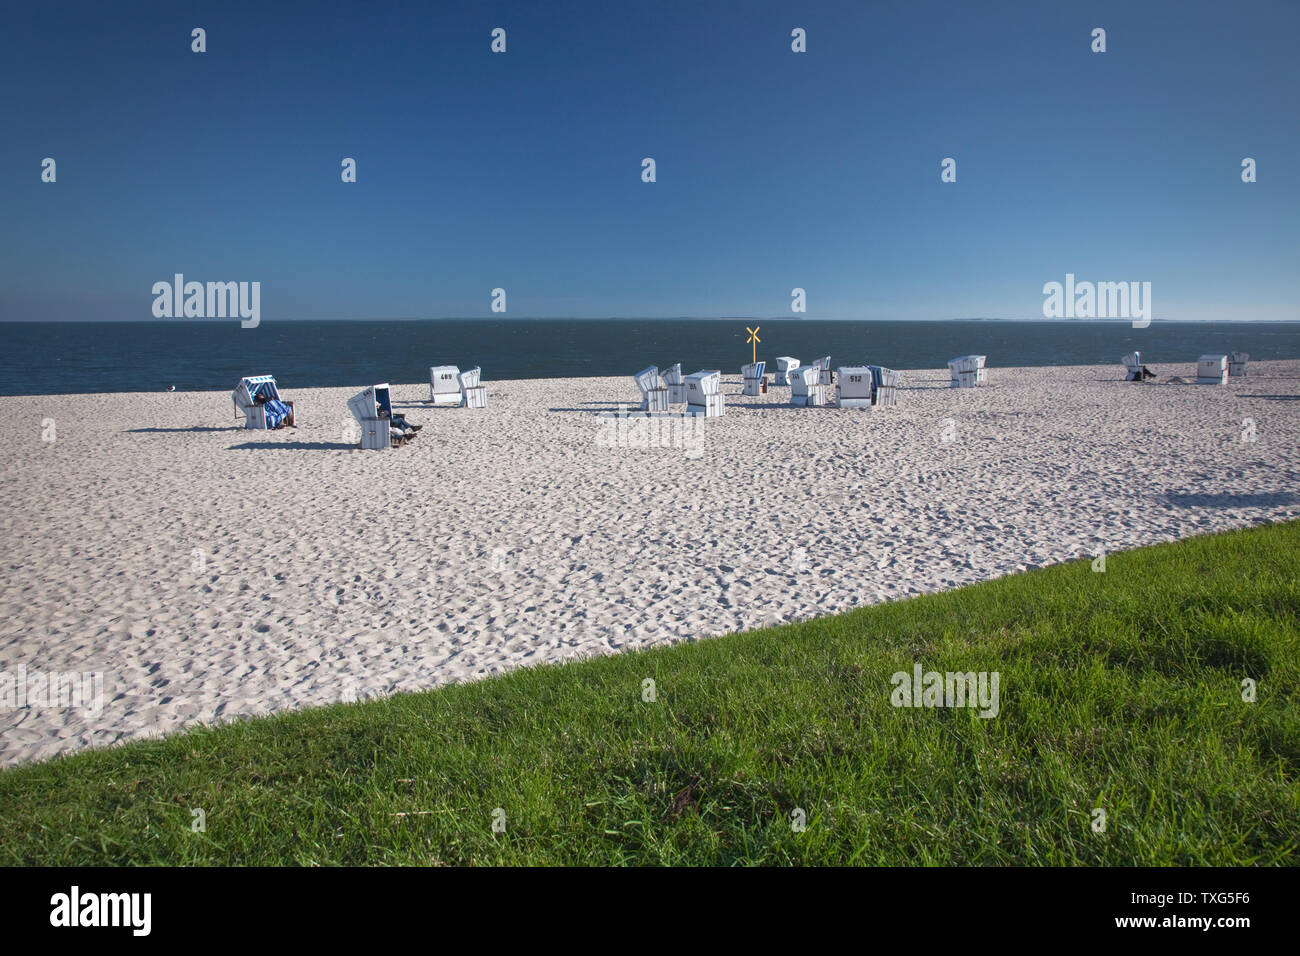 Géographie / Voyage, Allemagne, Schleswig-Holstein, chaise de plage à la plage de Hoernum, isle Sylt, droits-supplémentaires-déstockage-Info-non-disponible Banque D'Images